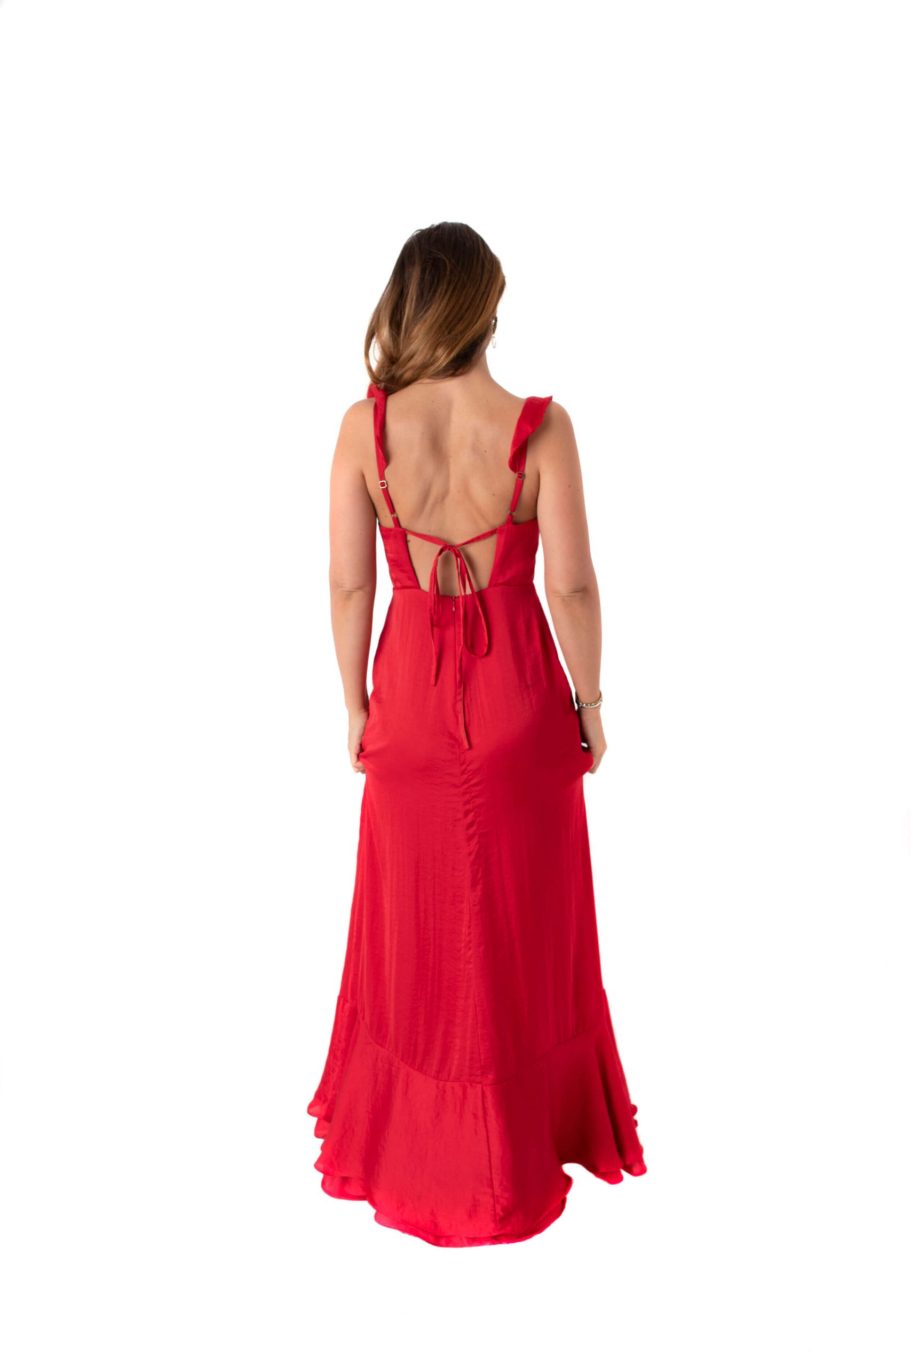 Vestido largo rojo italiano de seda marca Debut - Chic Dress Project